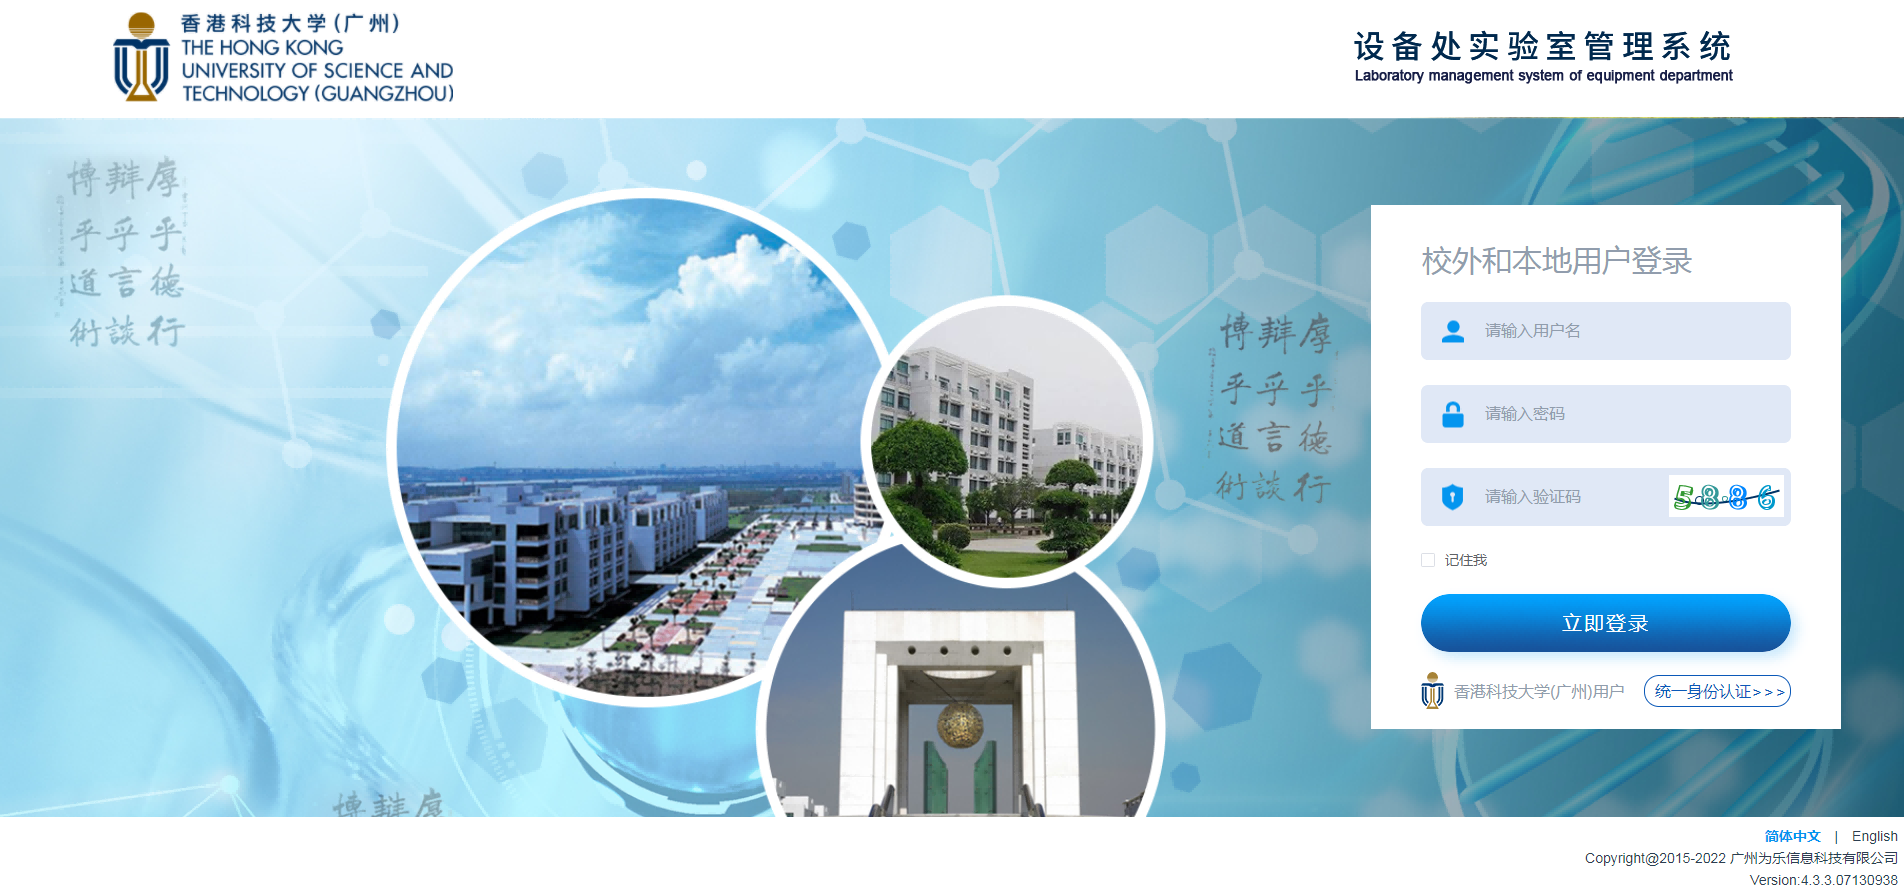 喜报 | 为乐信息科技成功中标 香港科技大学（广州）实验室安全管理系统项目